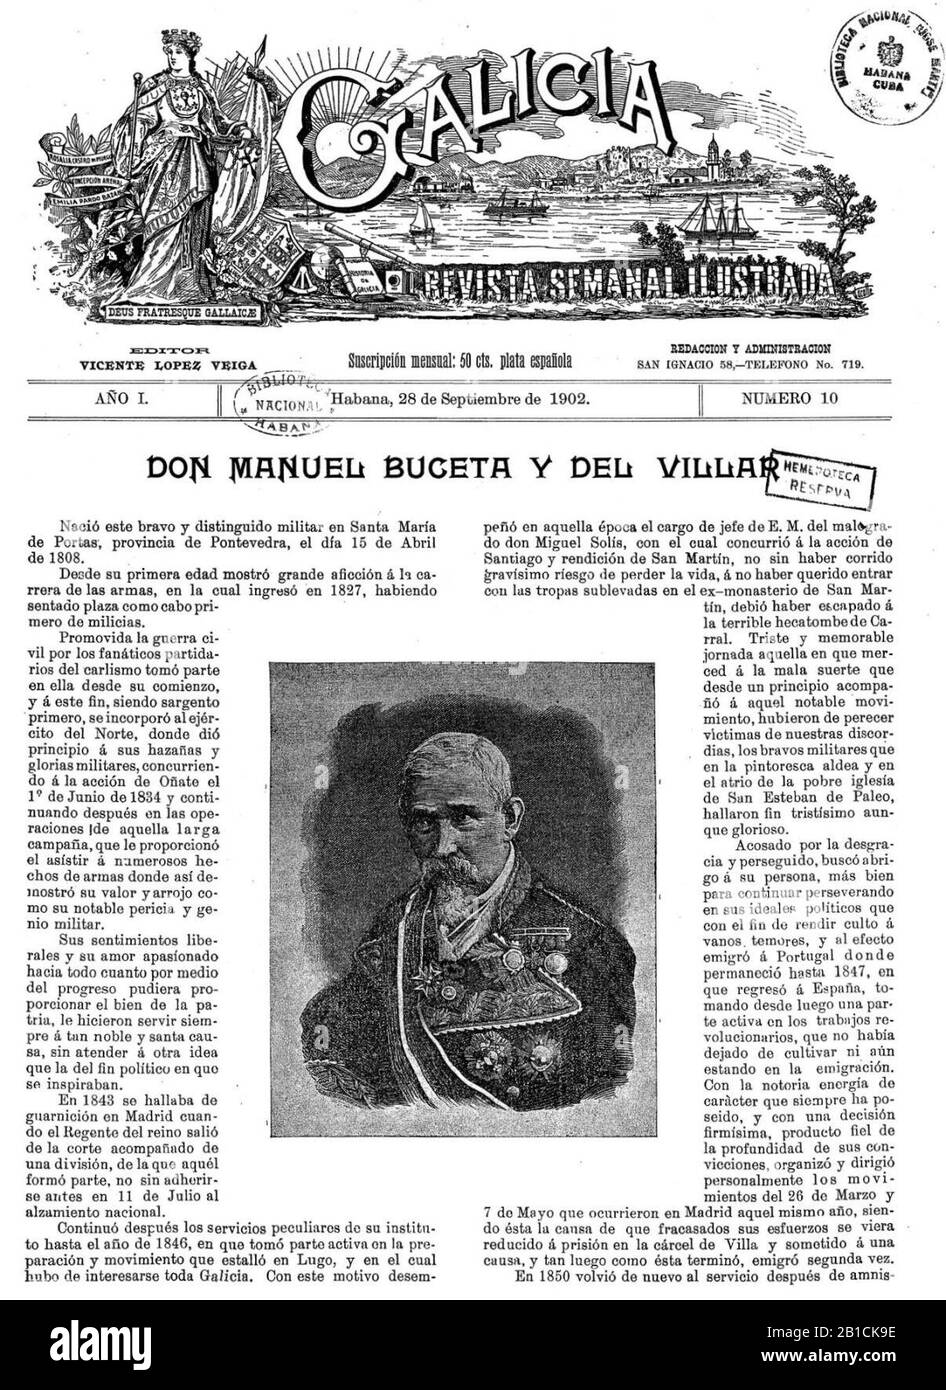 Galicia. Revista semanal ilustrada, número 10. La Habana. 28 de septiembre de 1902. Stock Photo